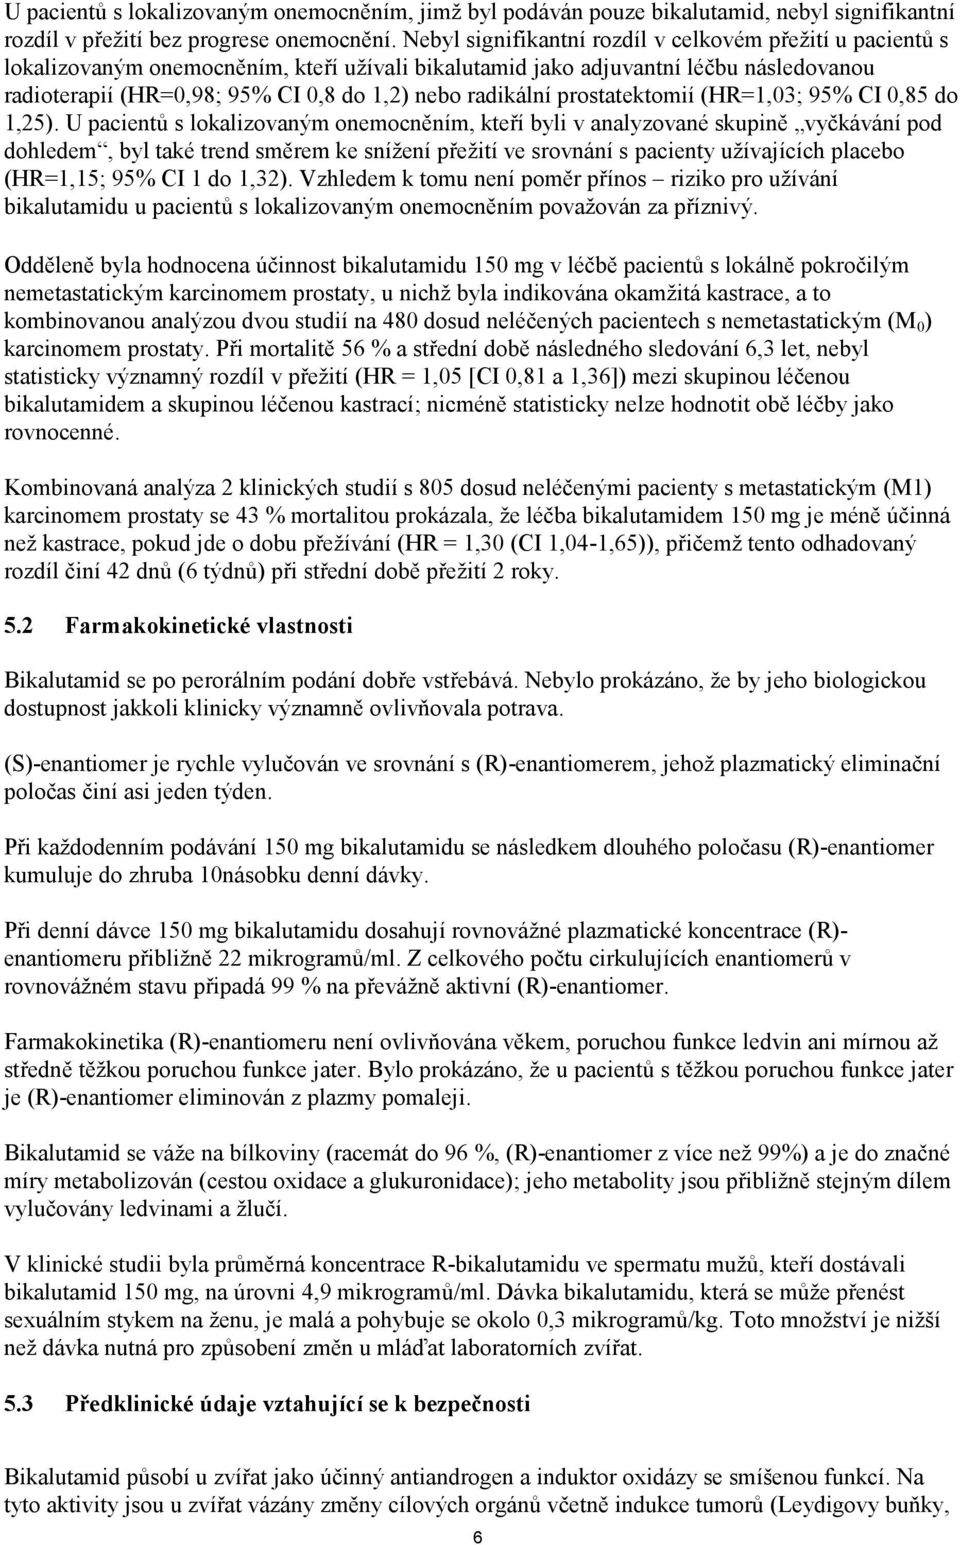 radikální prostatektomií (HR=1,03; 95% CI 0,85 do 1,25).